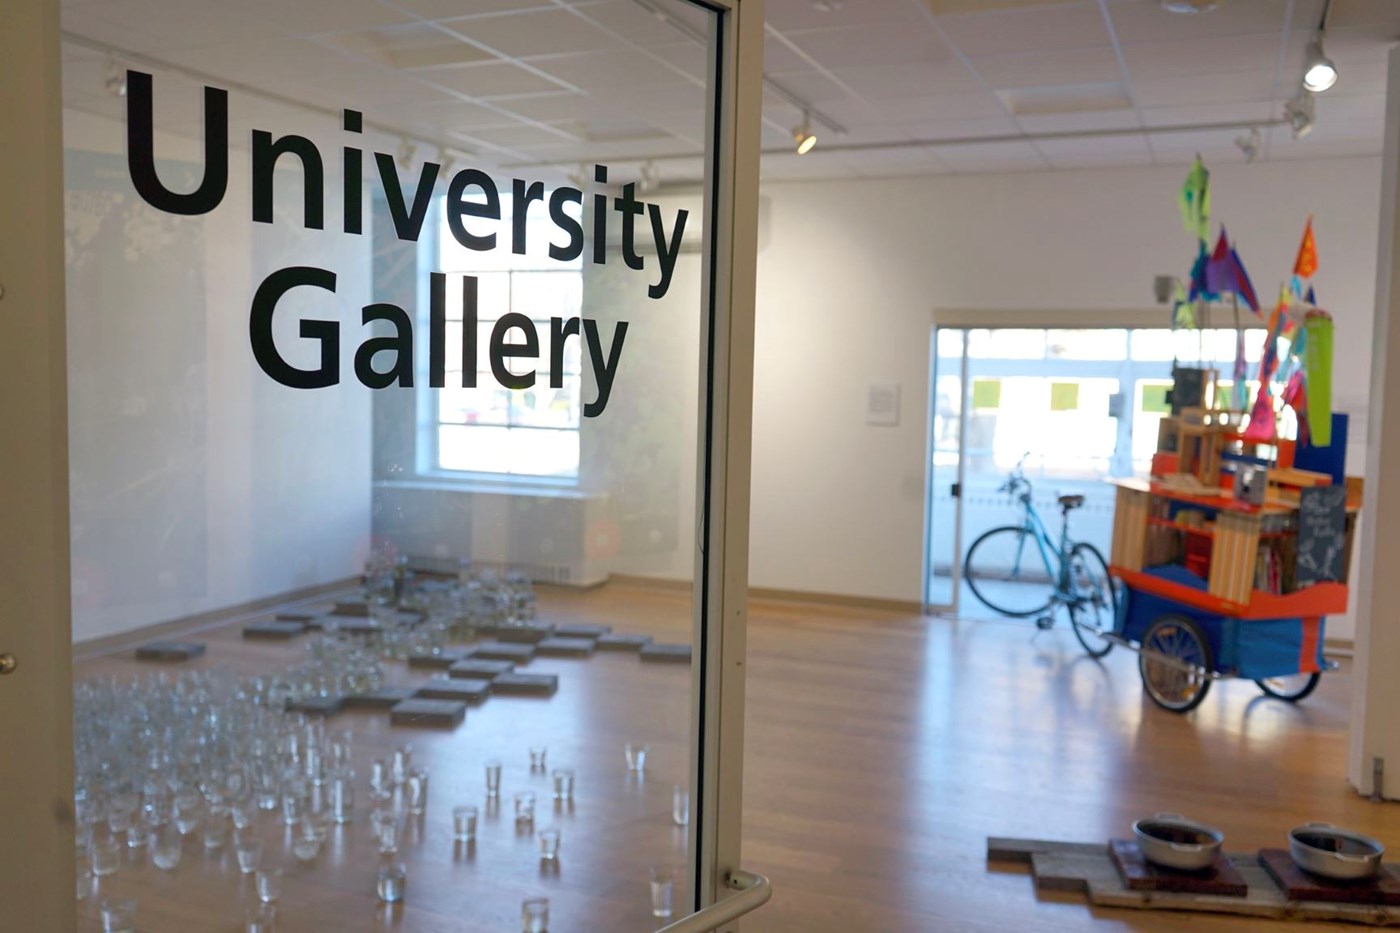 University Gallery door with exhibits inside